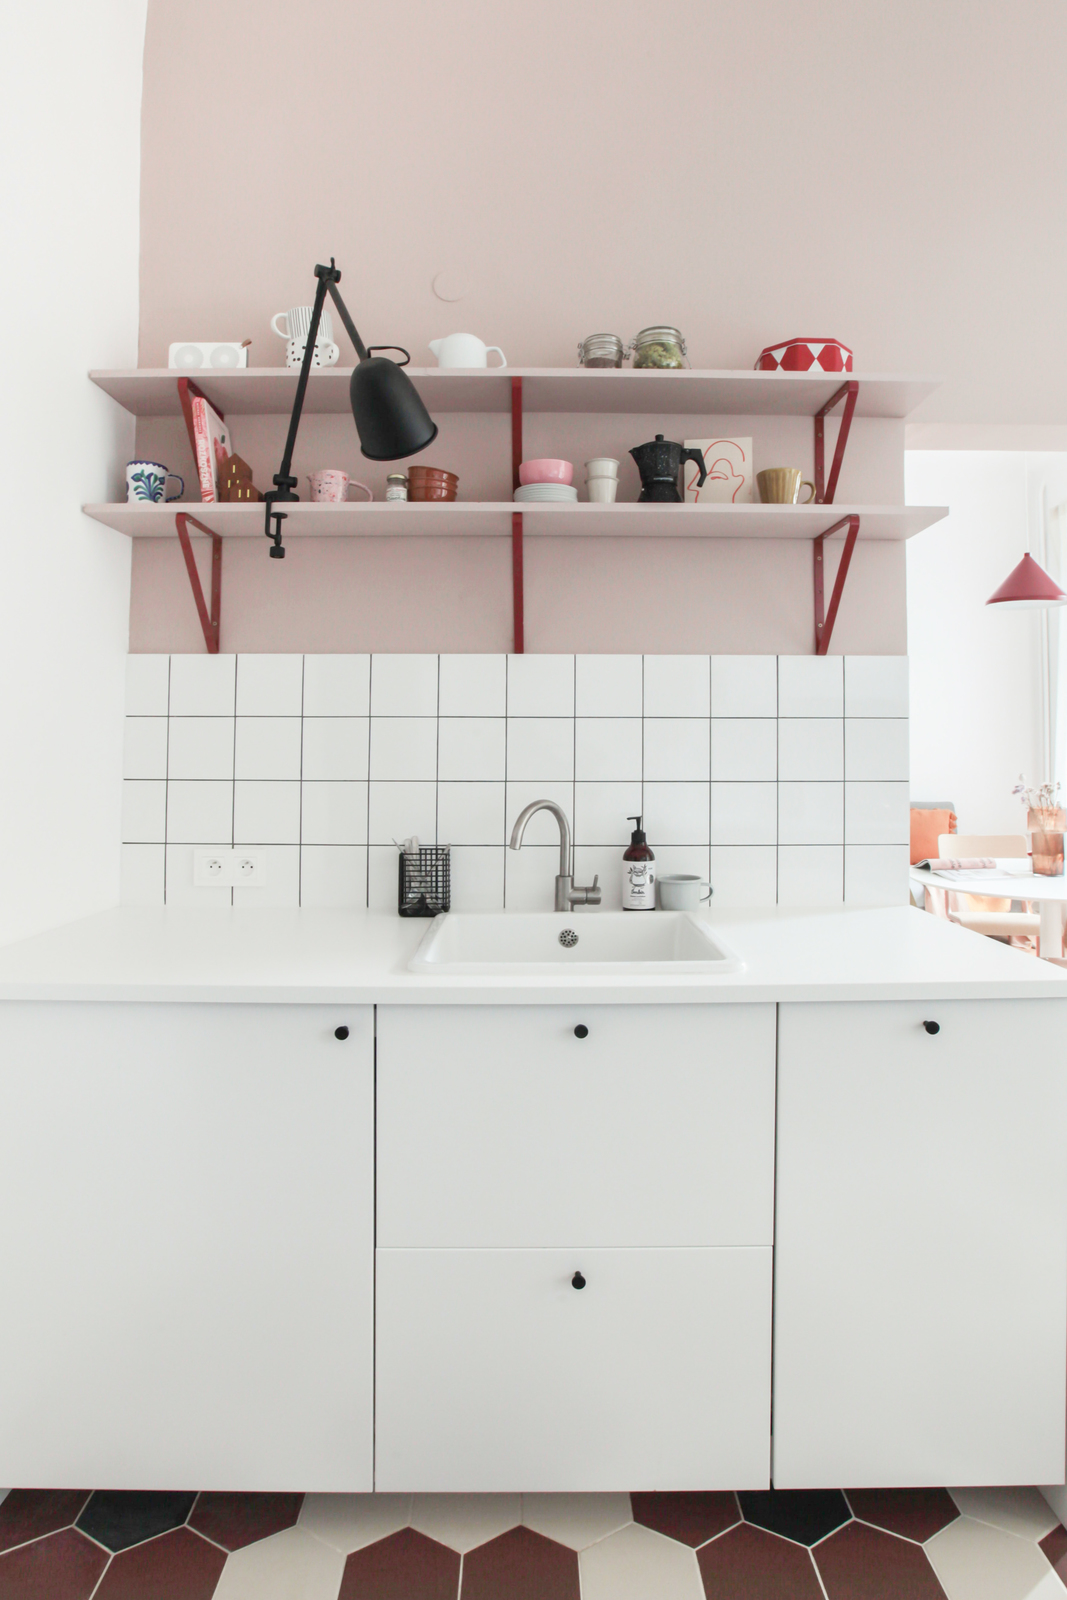 Phòng bếp nhỏ nhưng xinh xắn và đáng yêu nhờ cách phối tone màu tím pastel và trắng. Khu vực backsplash ốp gạch mosaic vuông màu trắng sạch sẽ, tương phản nhẹ nhàng với nền nhà lát gạch tổ ong bắt mắt.